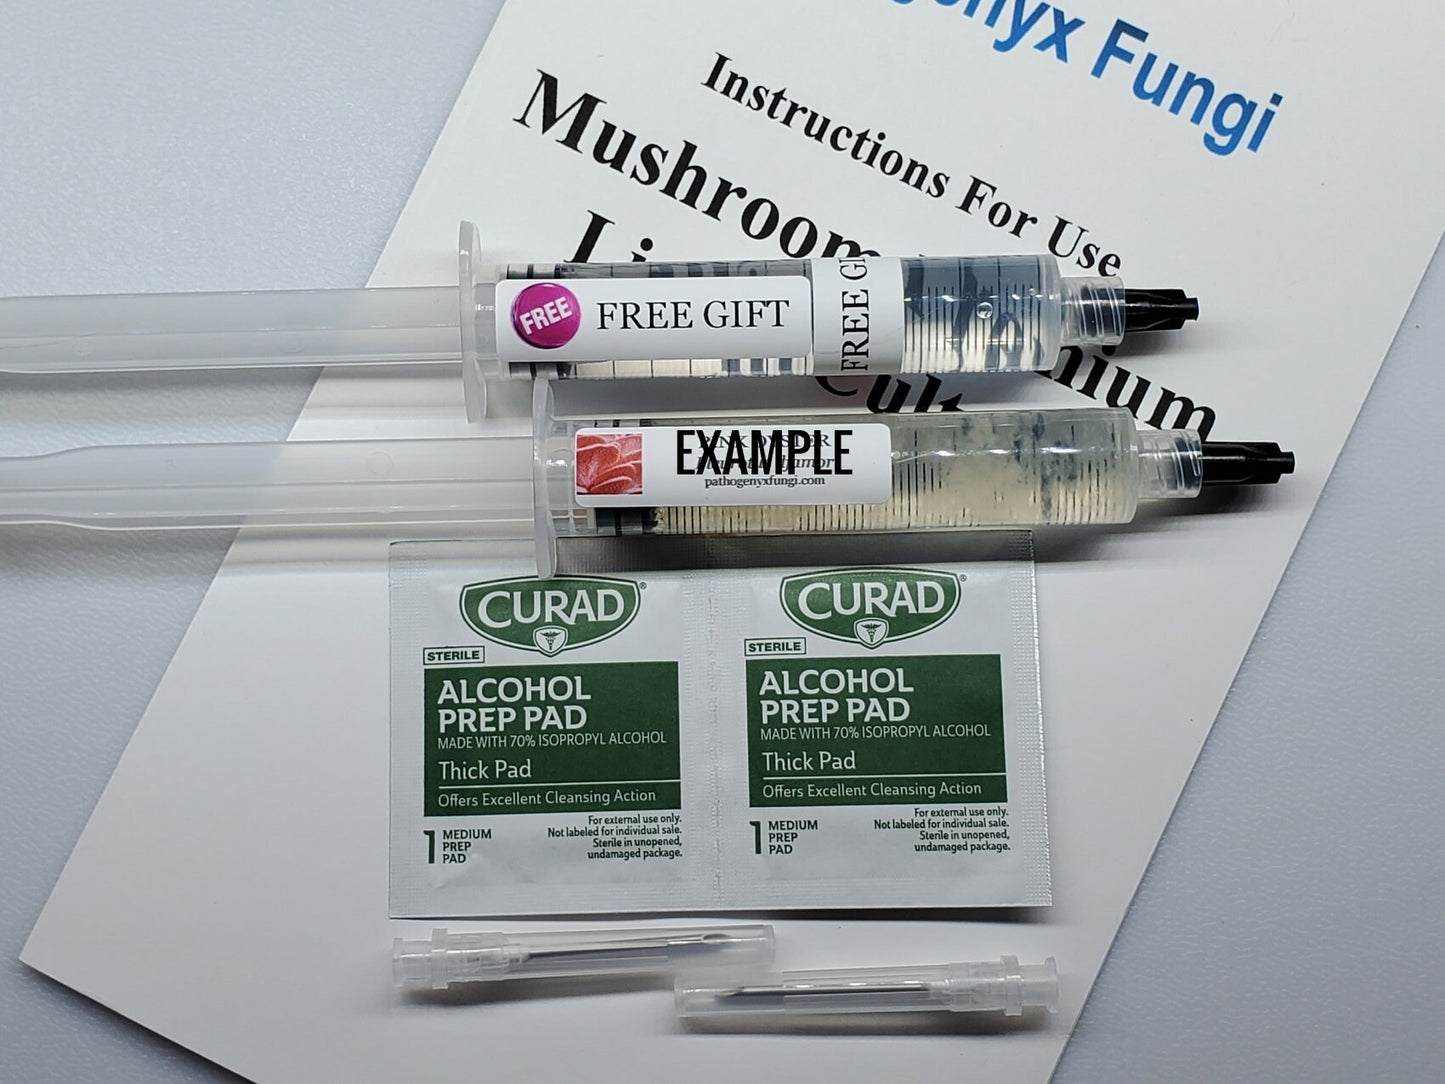 BEEFSTEAK FUNGUS, liquid culture syringe, Premium Mycelium™